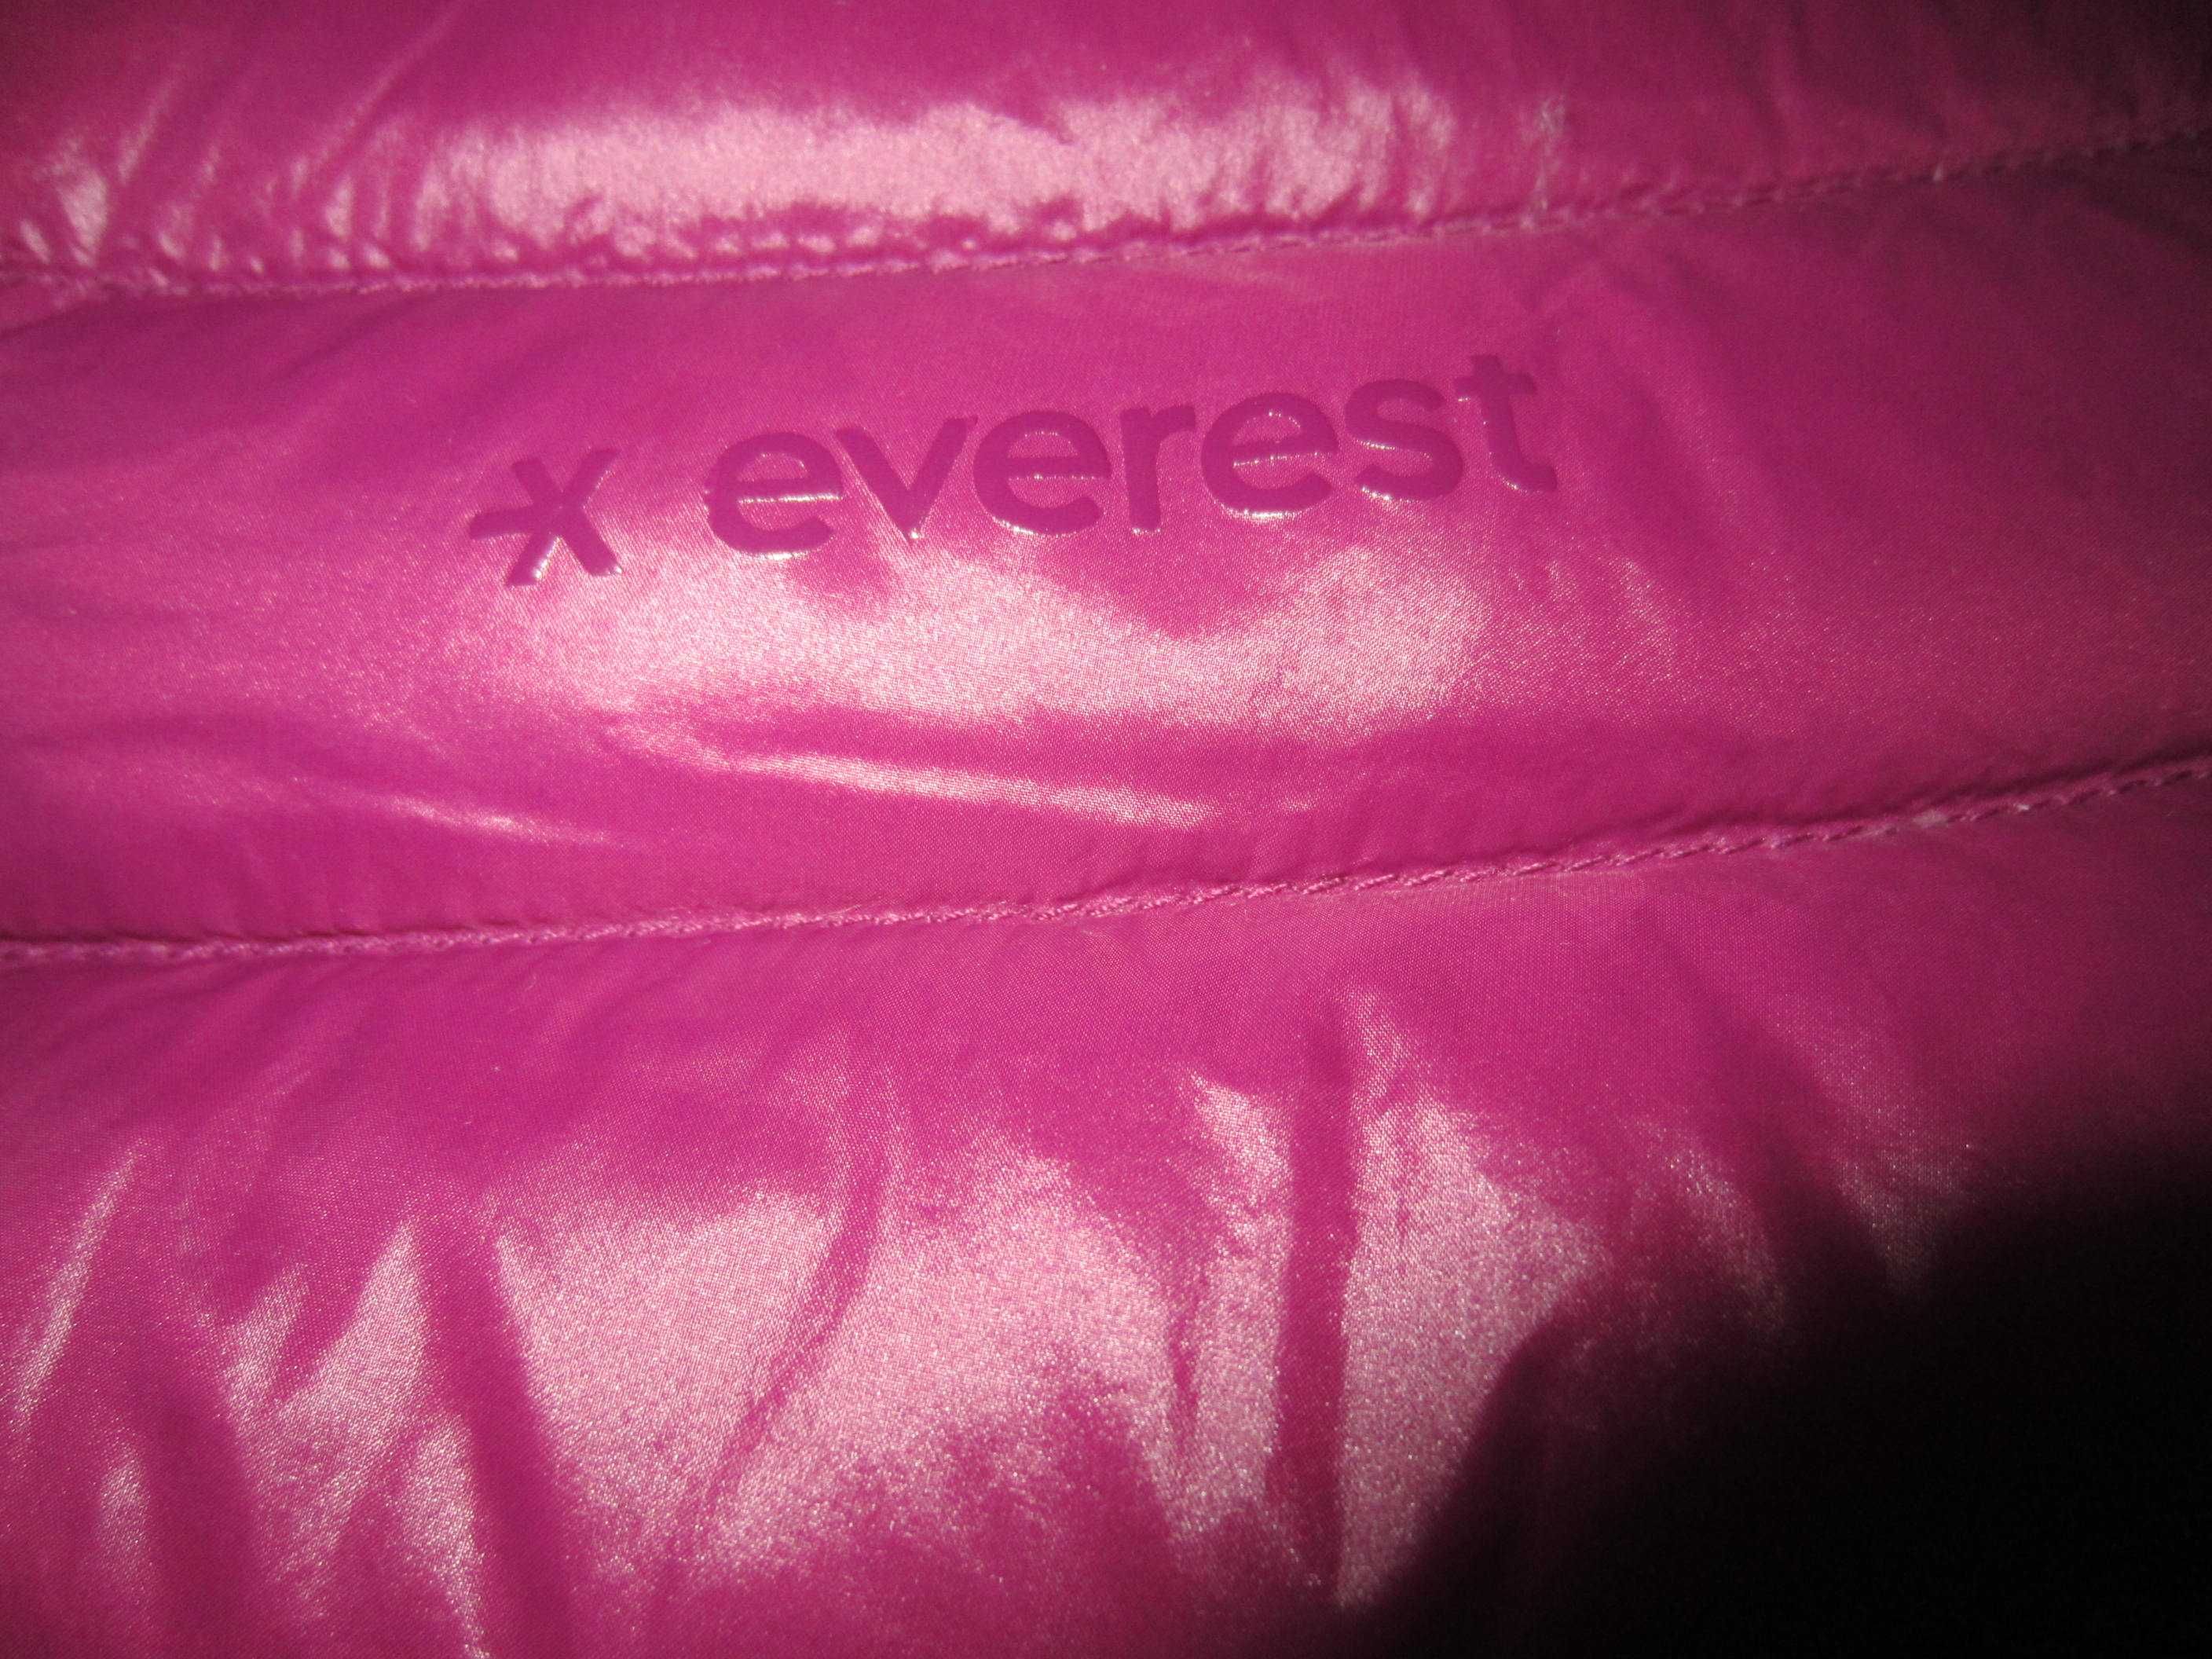 Geaca puf lightwear dama Everest, masura 38 (M),stare f.buna- ca noua